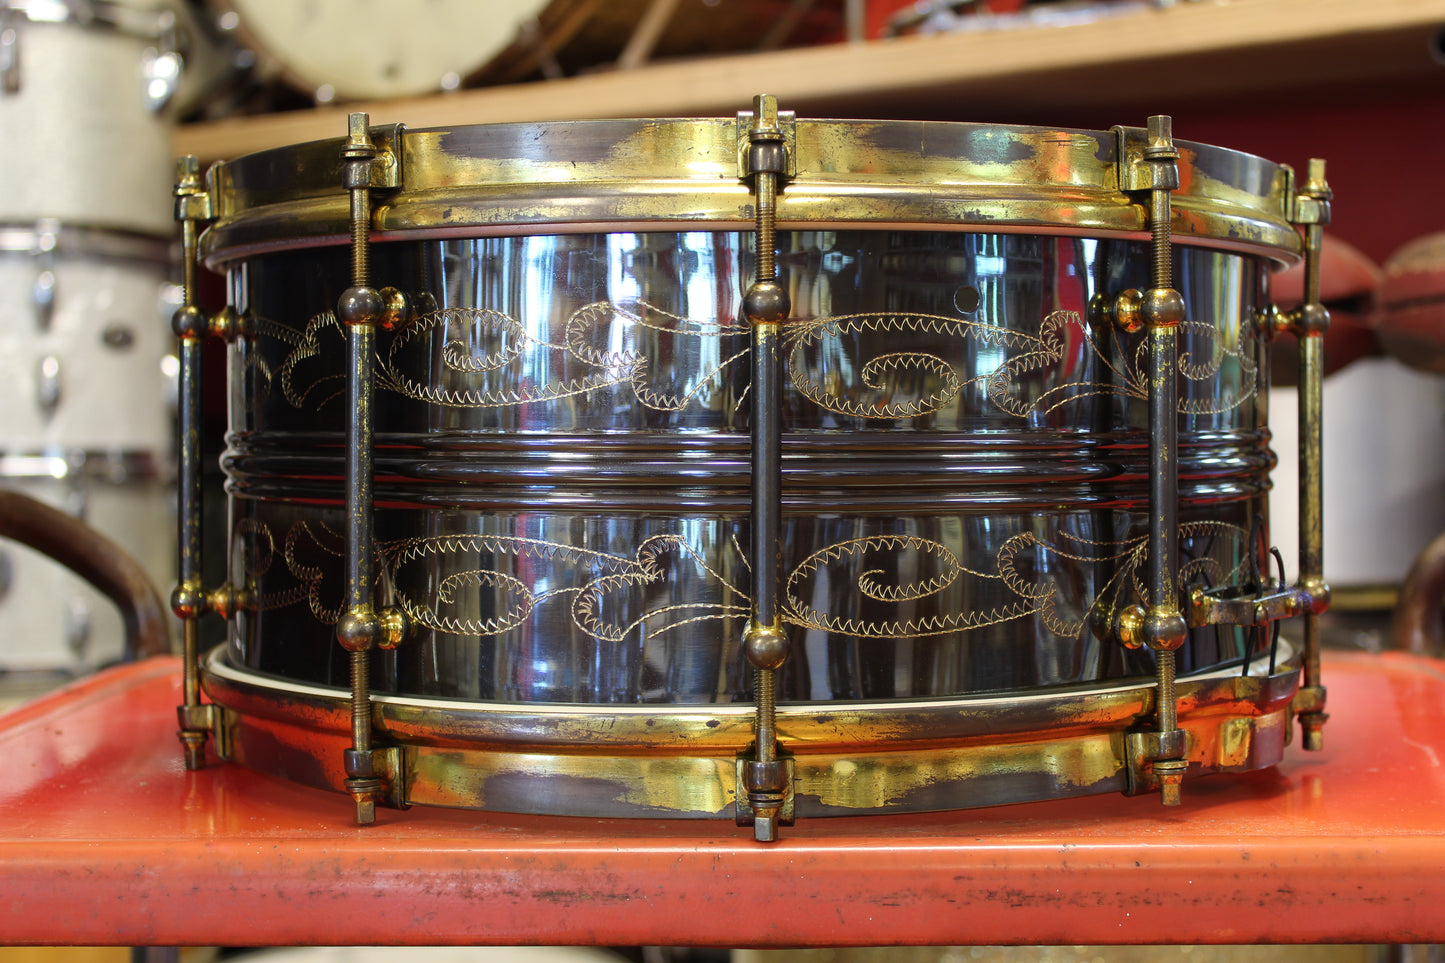 Adrian Kirchler Slingerland Black Beauty Replica Snare Drum 6.5"x14"